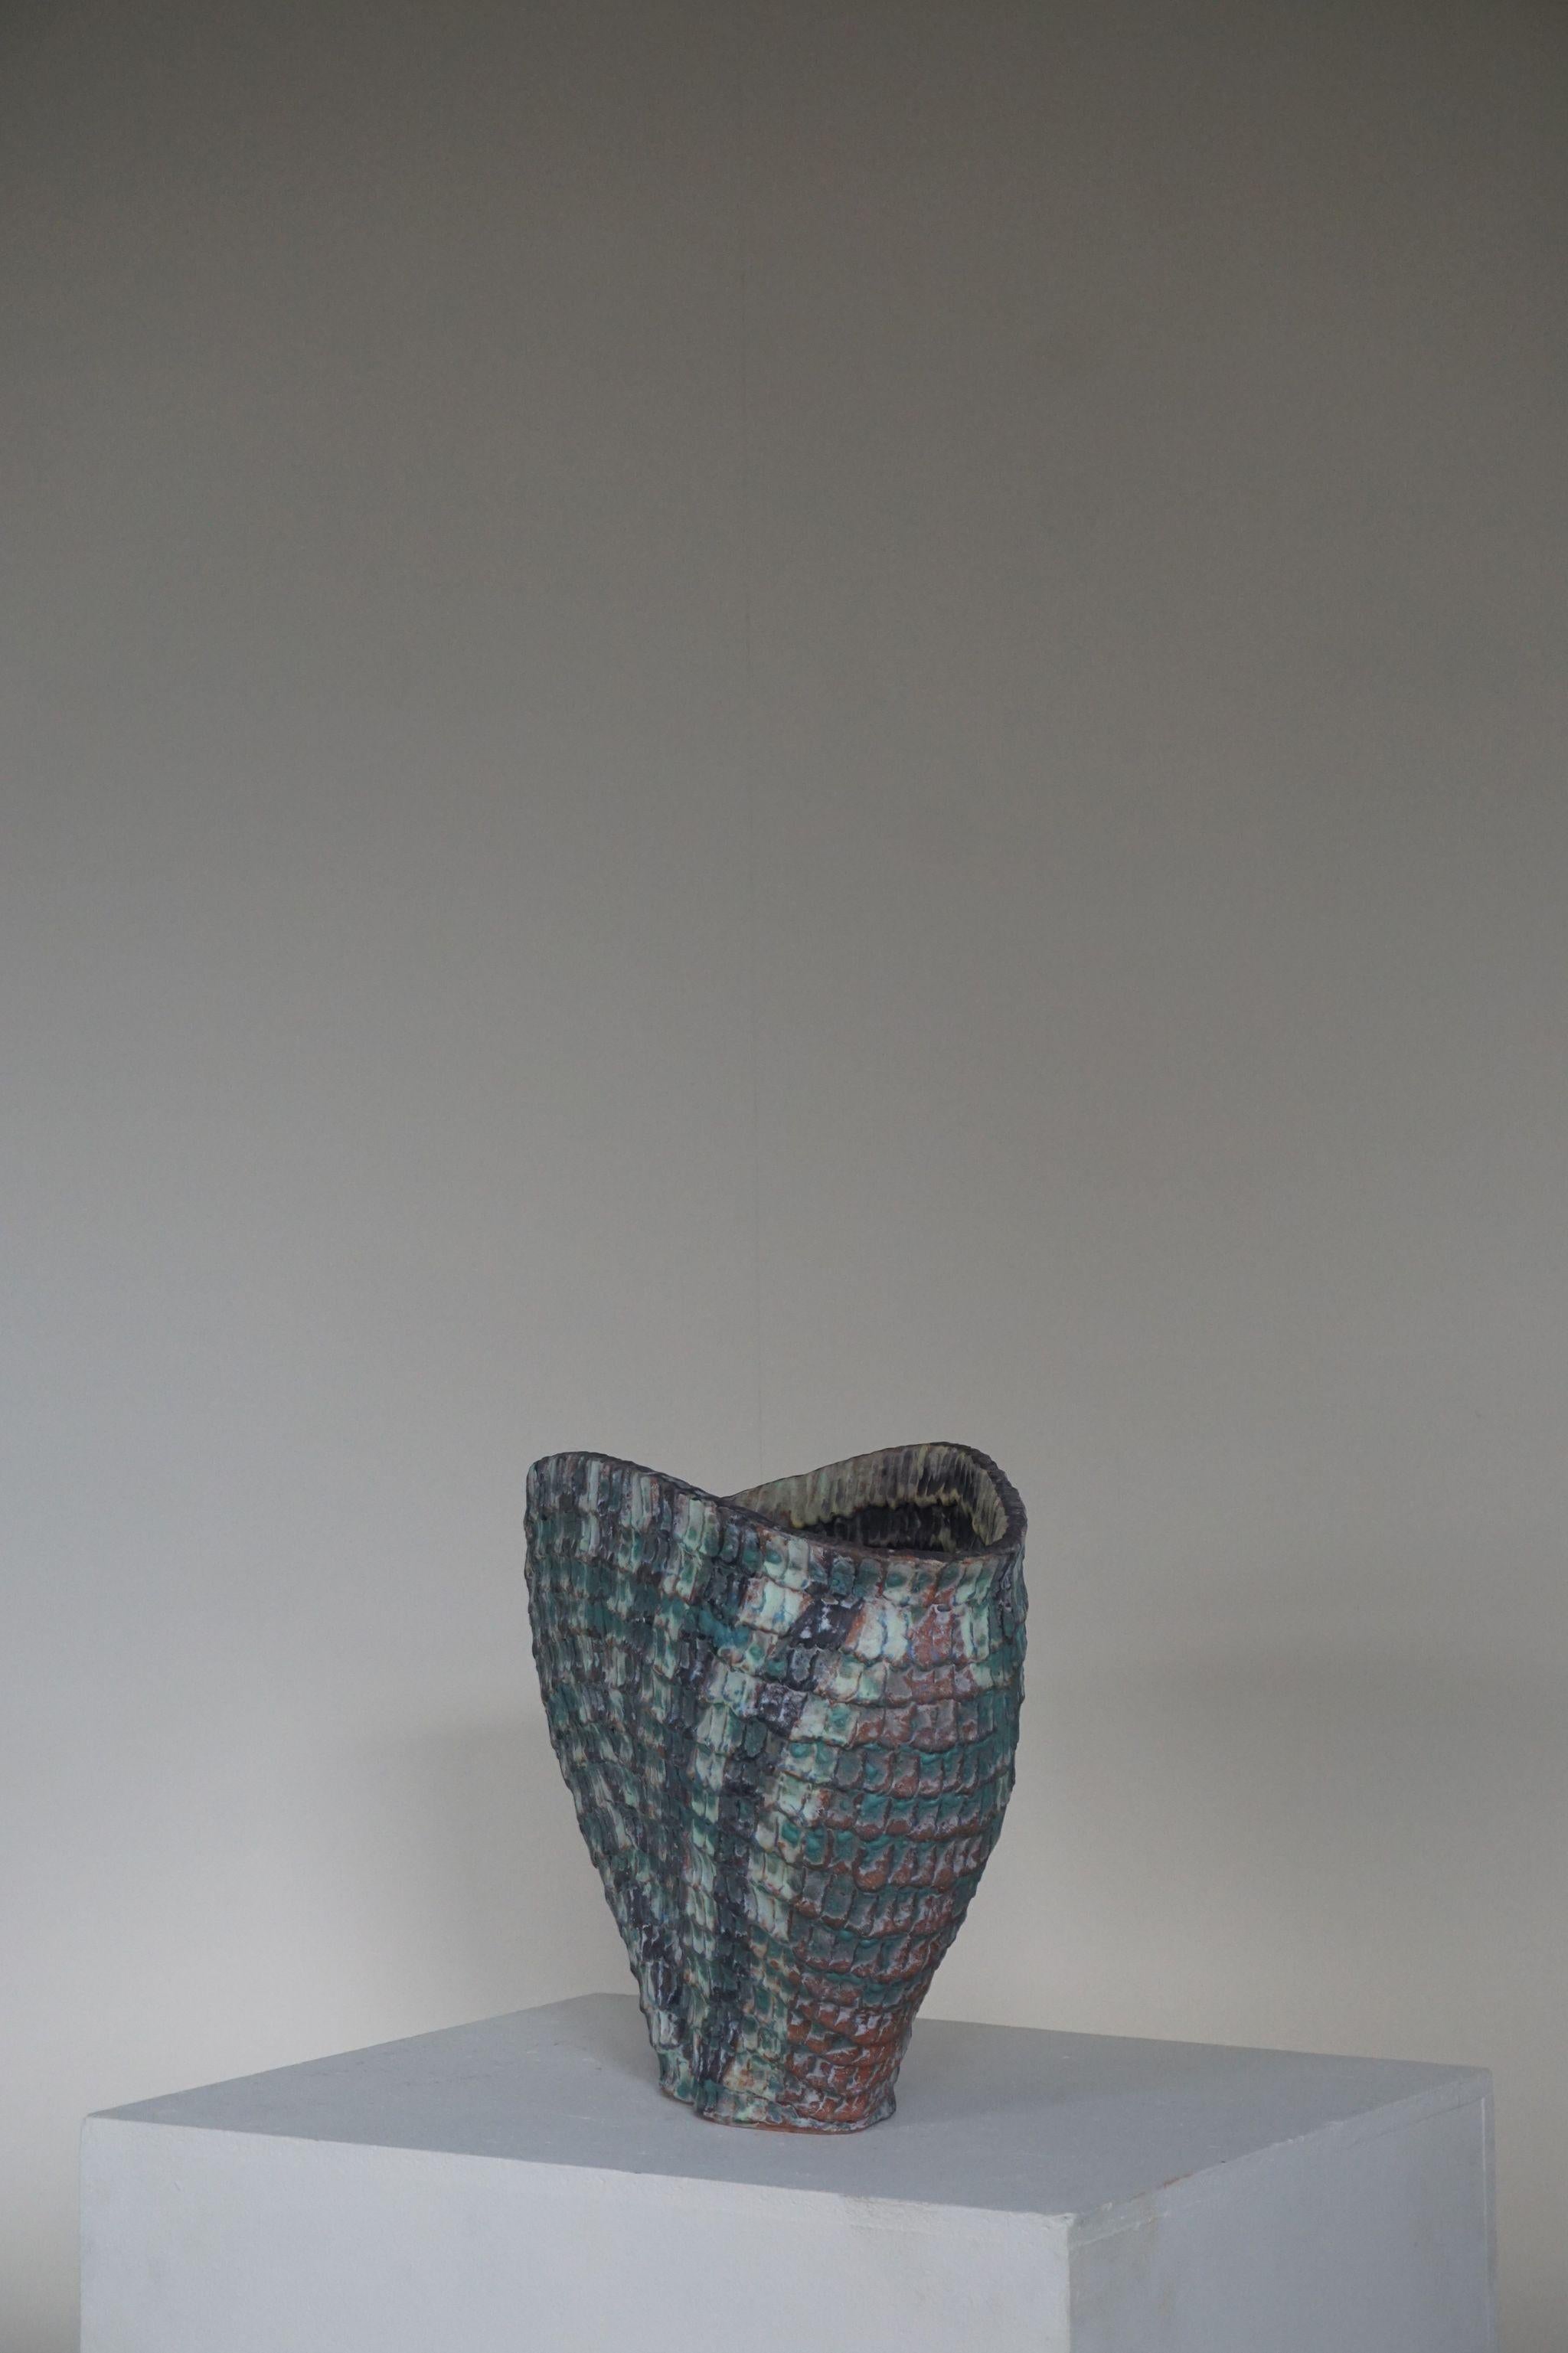 Vintage danish sculptural ceramic floor vase by artist Ole Victor, 1993. Glazed inside and out.